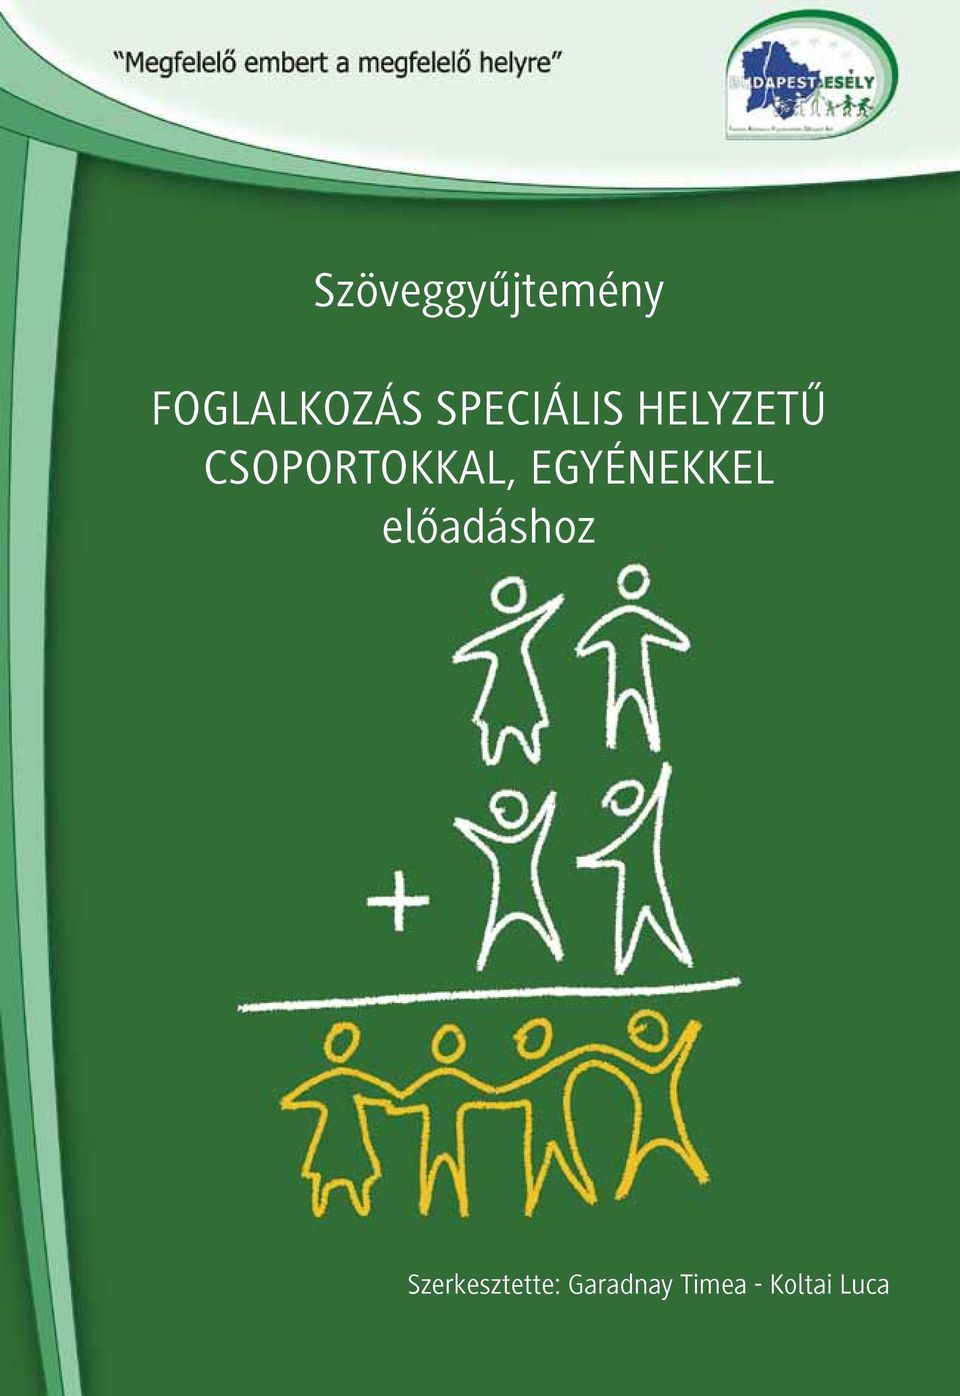 programot az Európai Szociális Alap és a Magyar